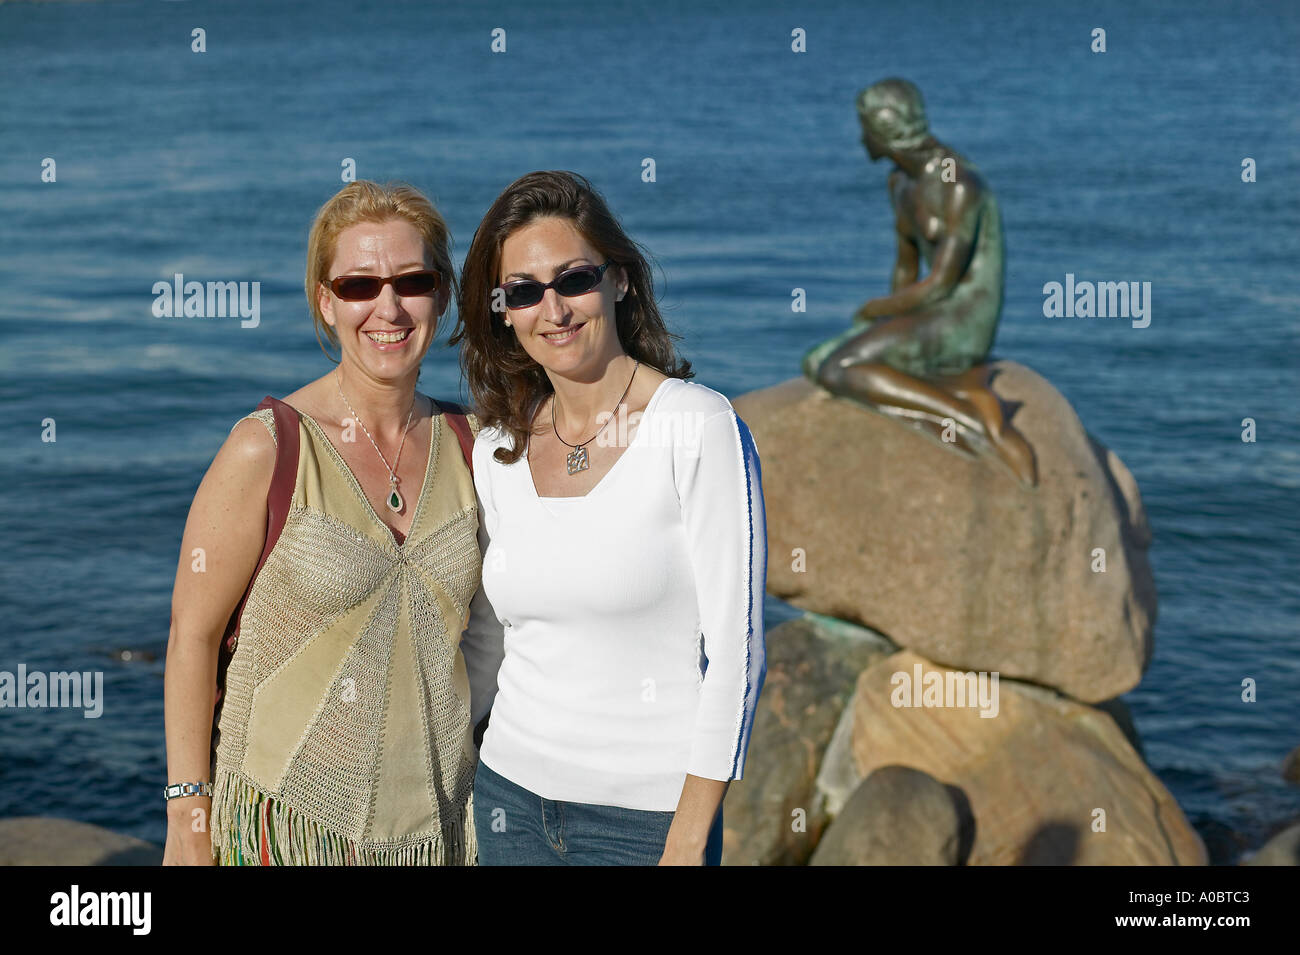 Zwei Spanische junge Frauen vor der Statue der Kleinen Meerjungfrau Posing, Kopenhagen, Dänemark, Europa Stockfoto